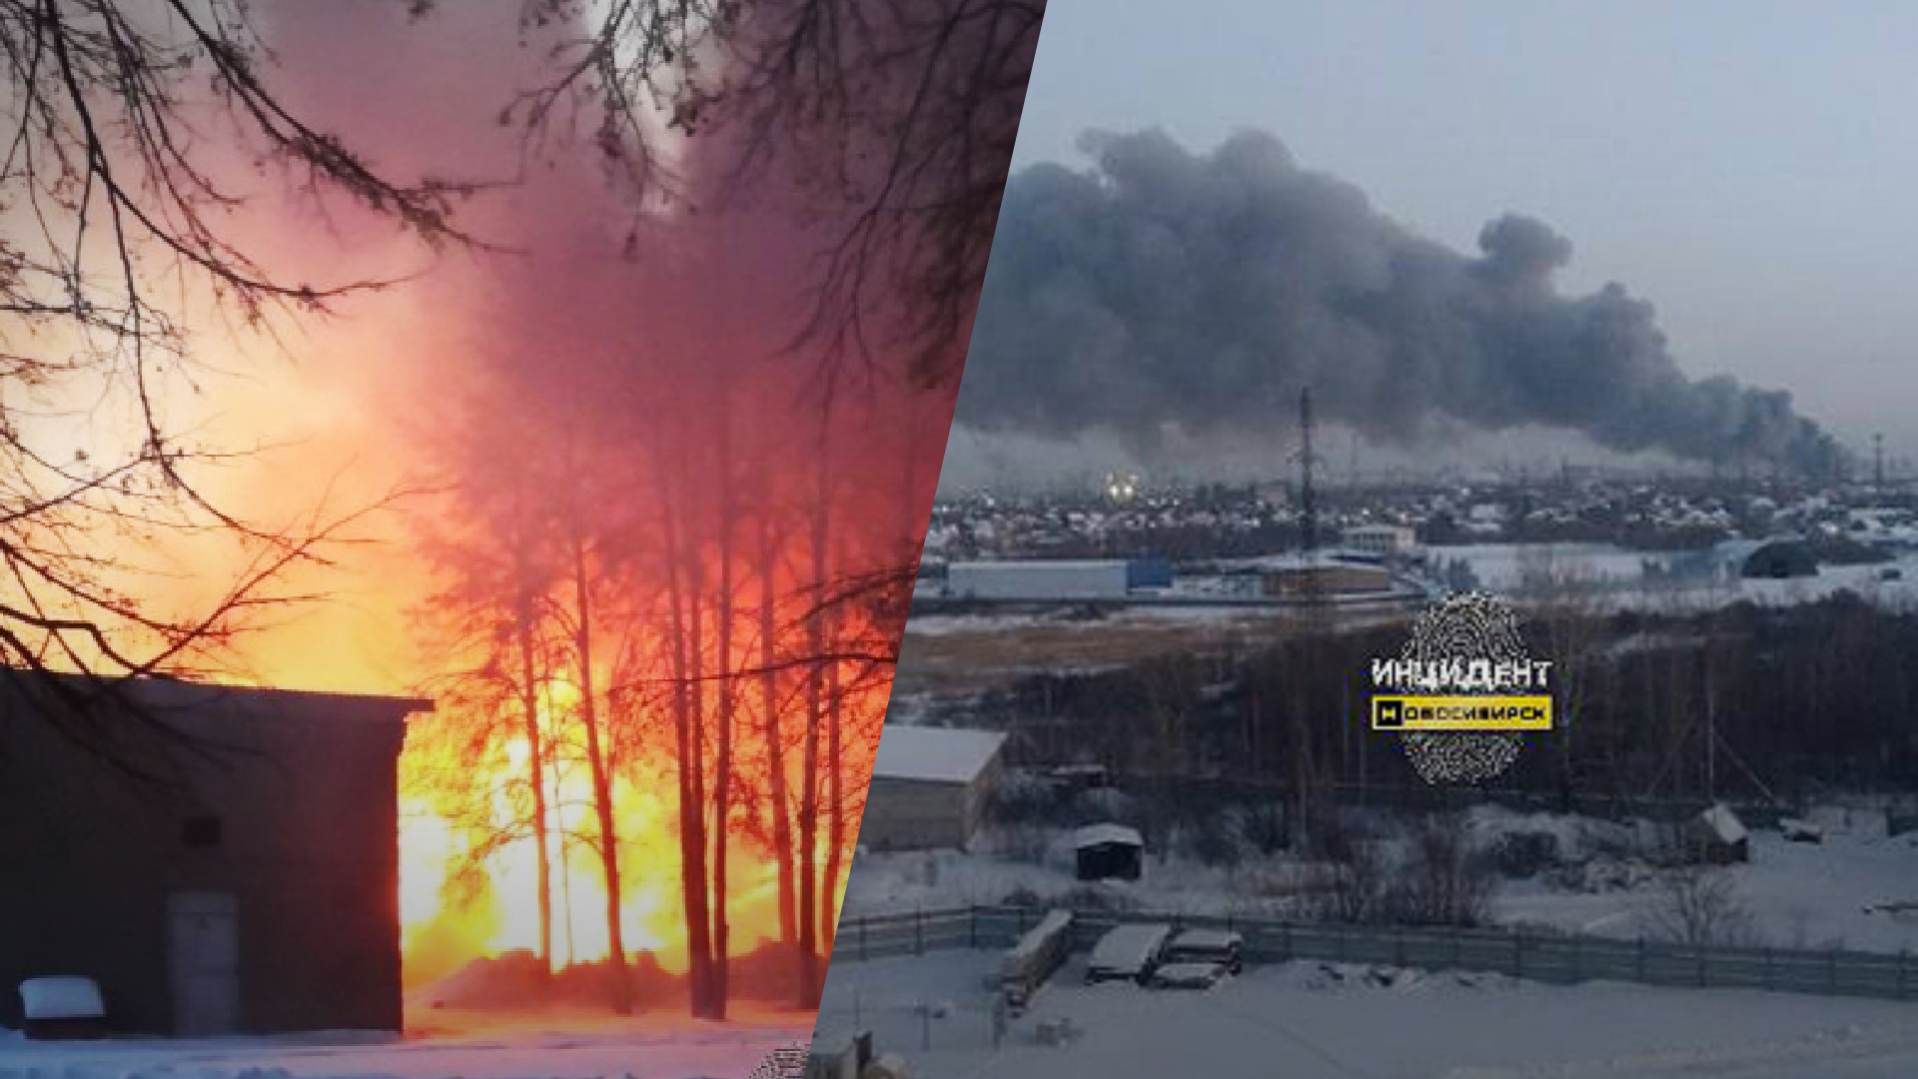 Пожар в Новосибирске 26 декабря 2022 года - горит склад с пластмассой